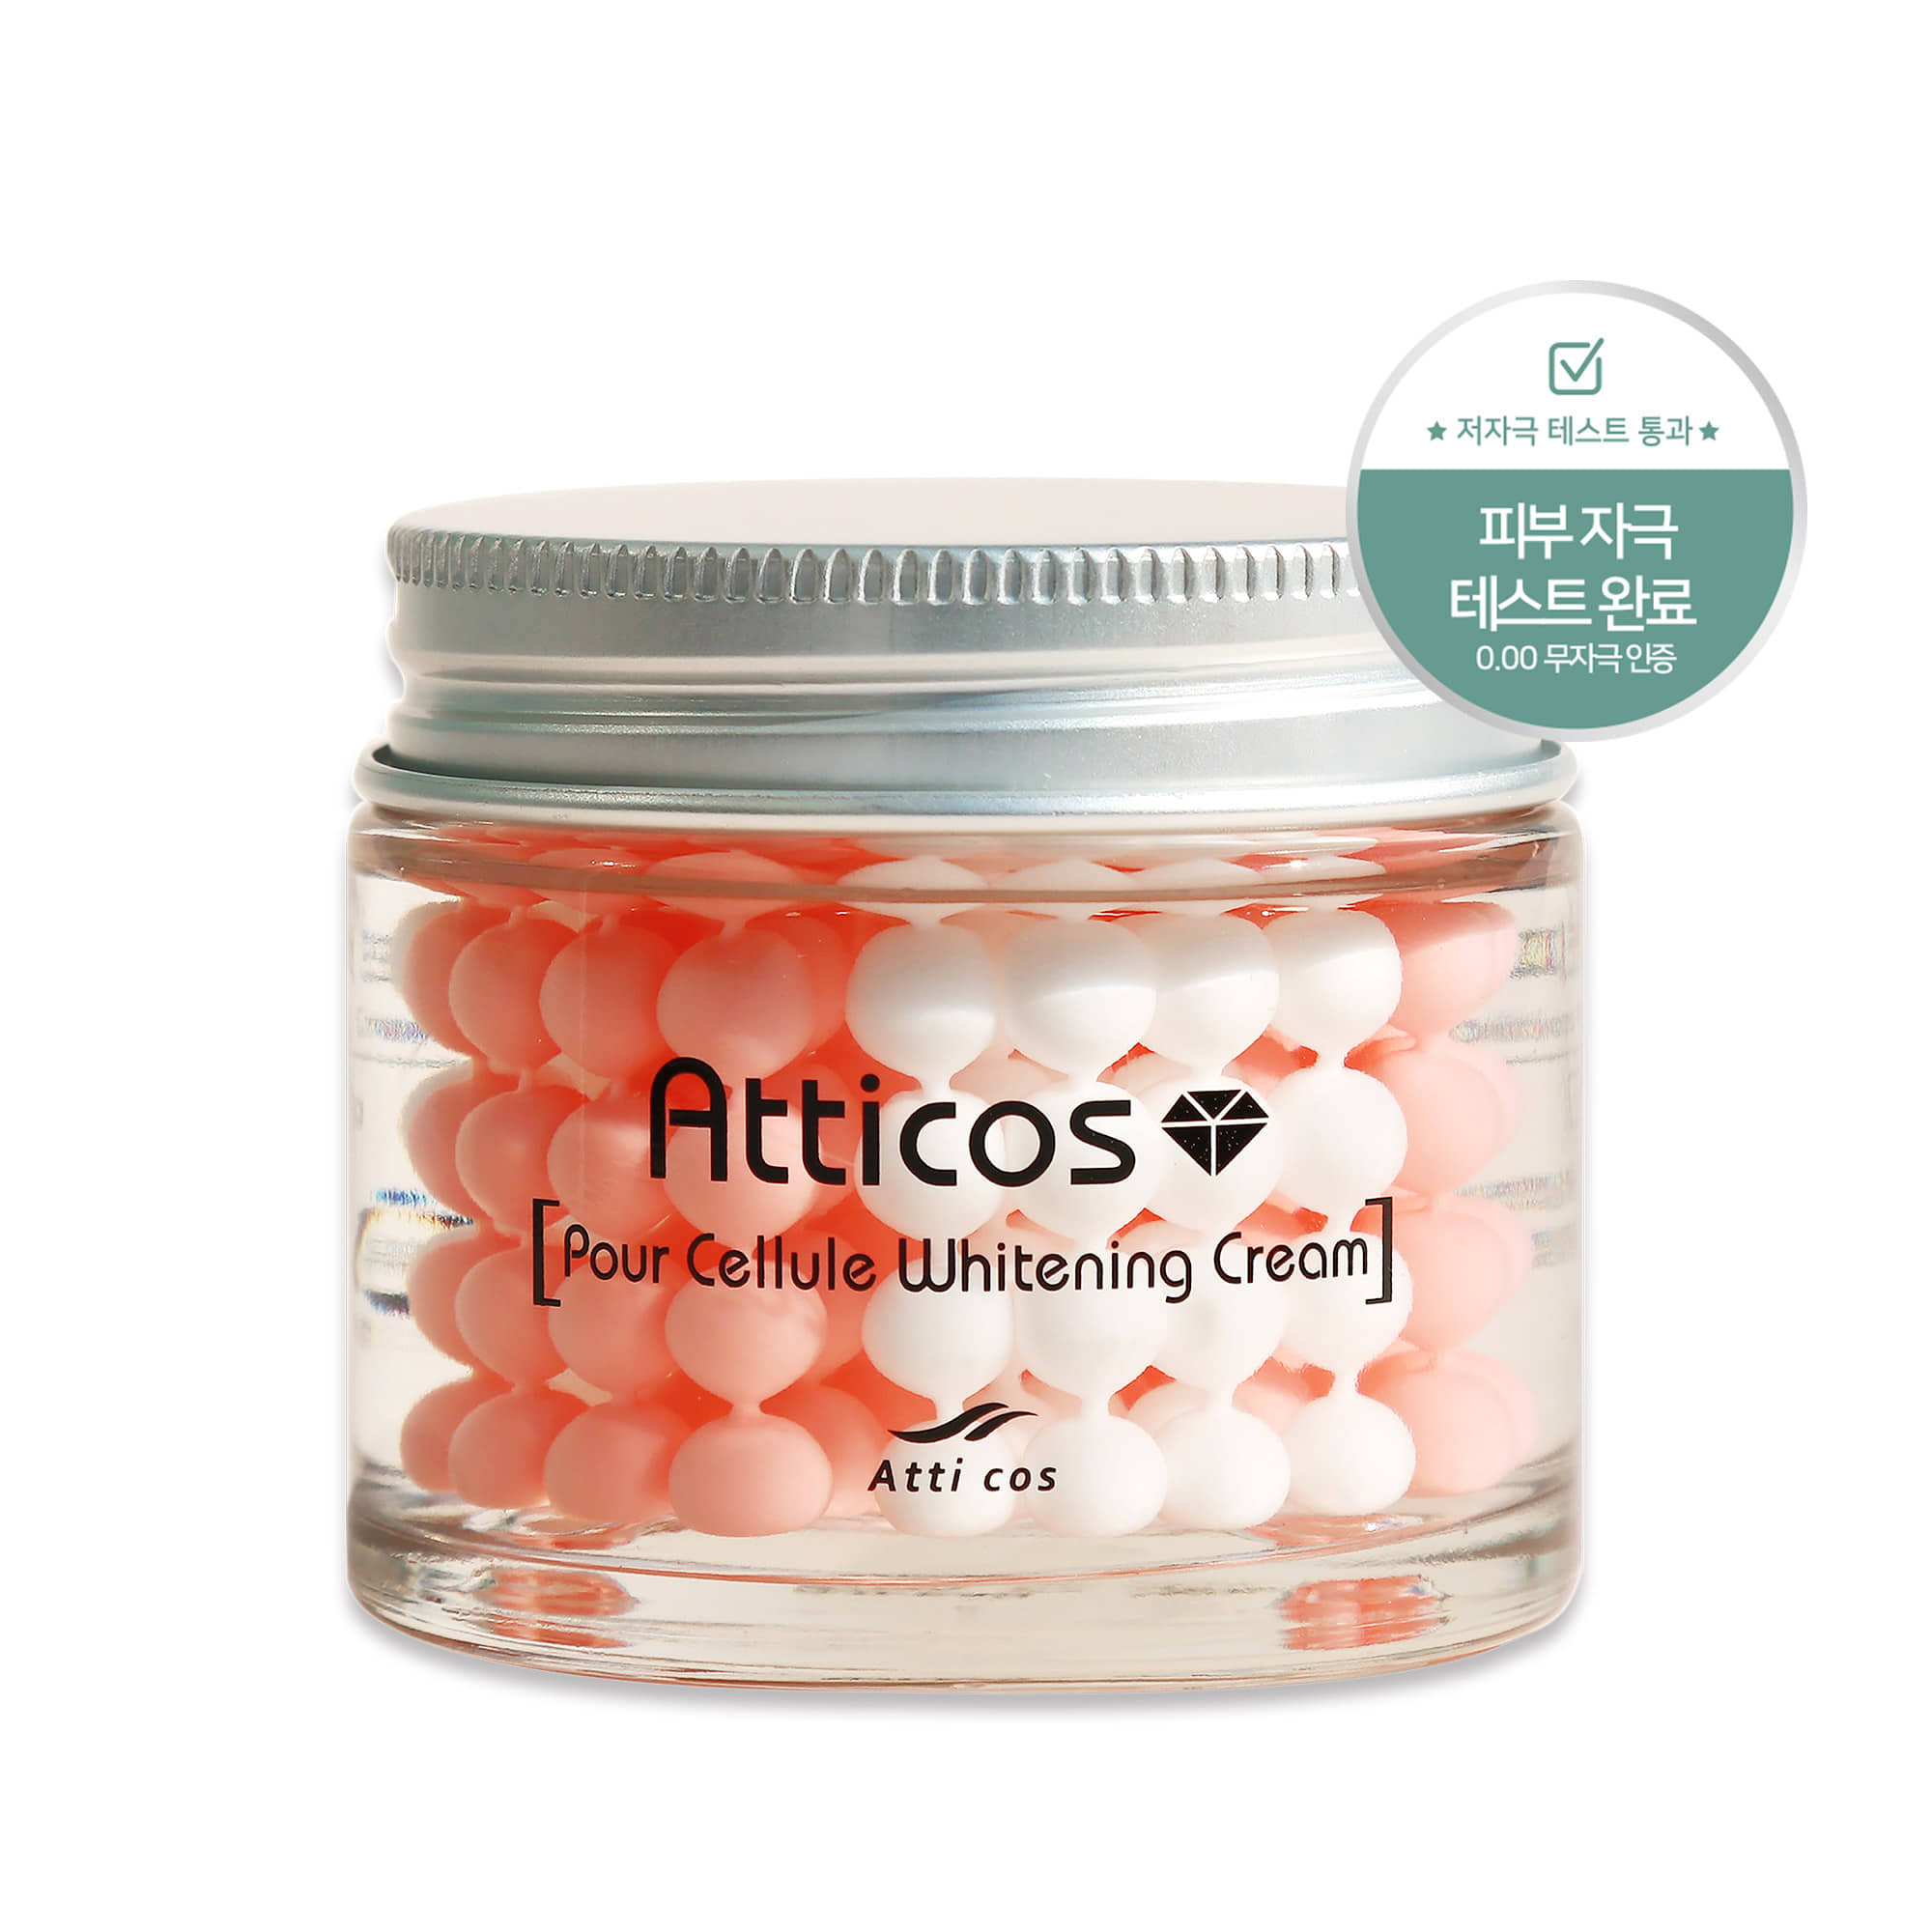 ATICOS保時捷美白麪霜 70g/水凝膠和美白顆粒